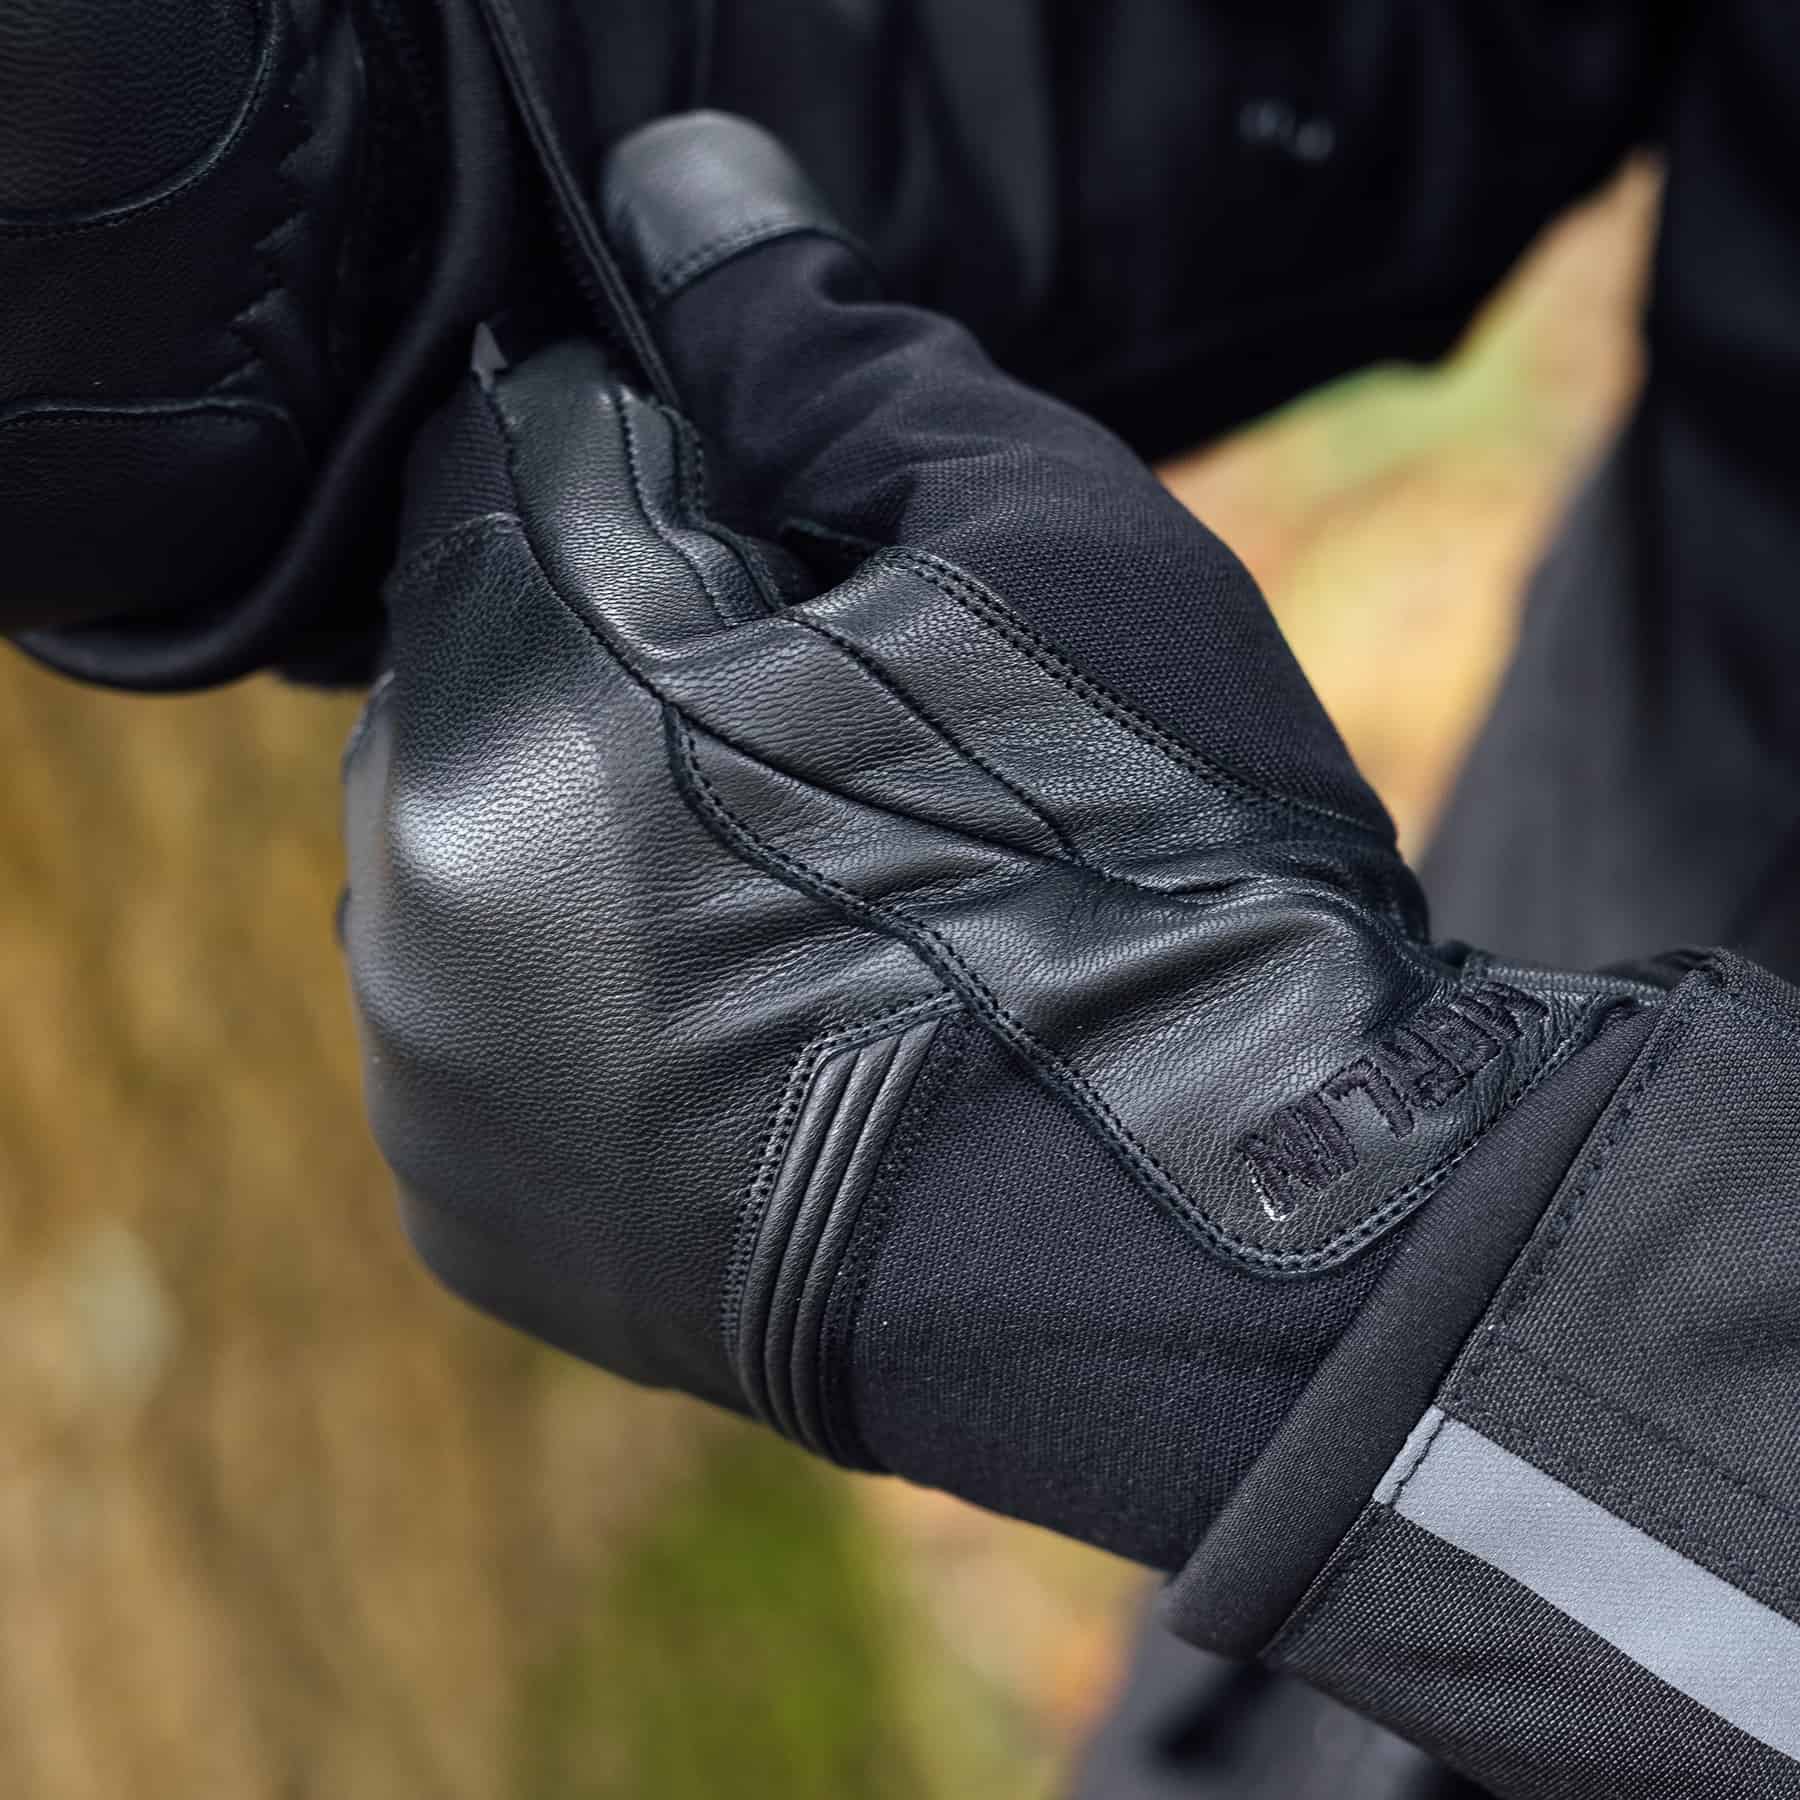 Merlin Cerro Gloves in black